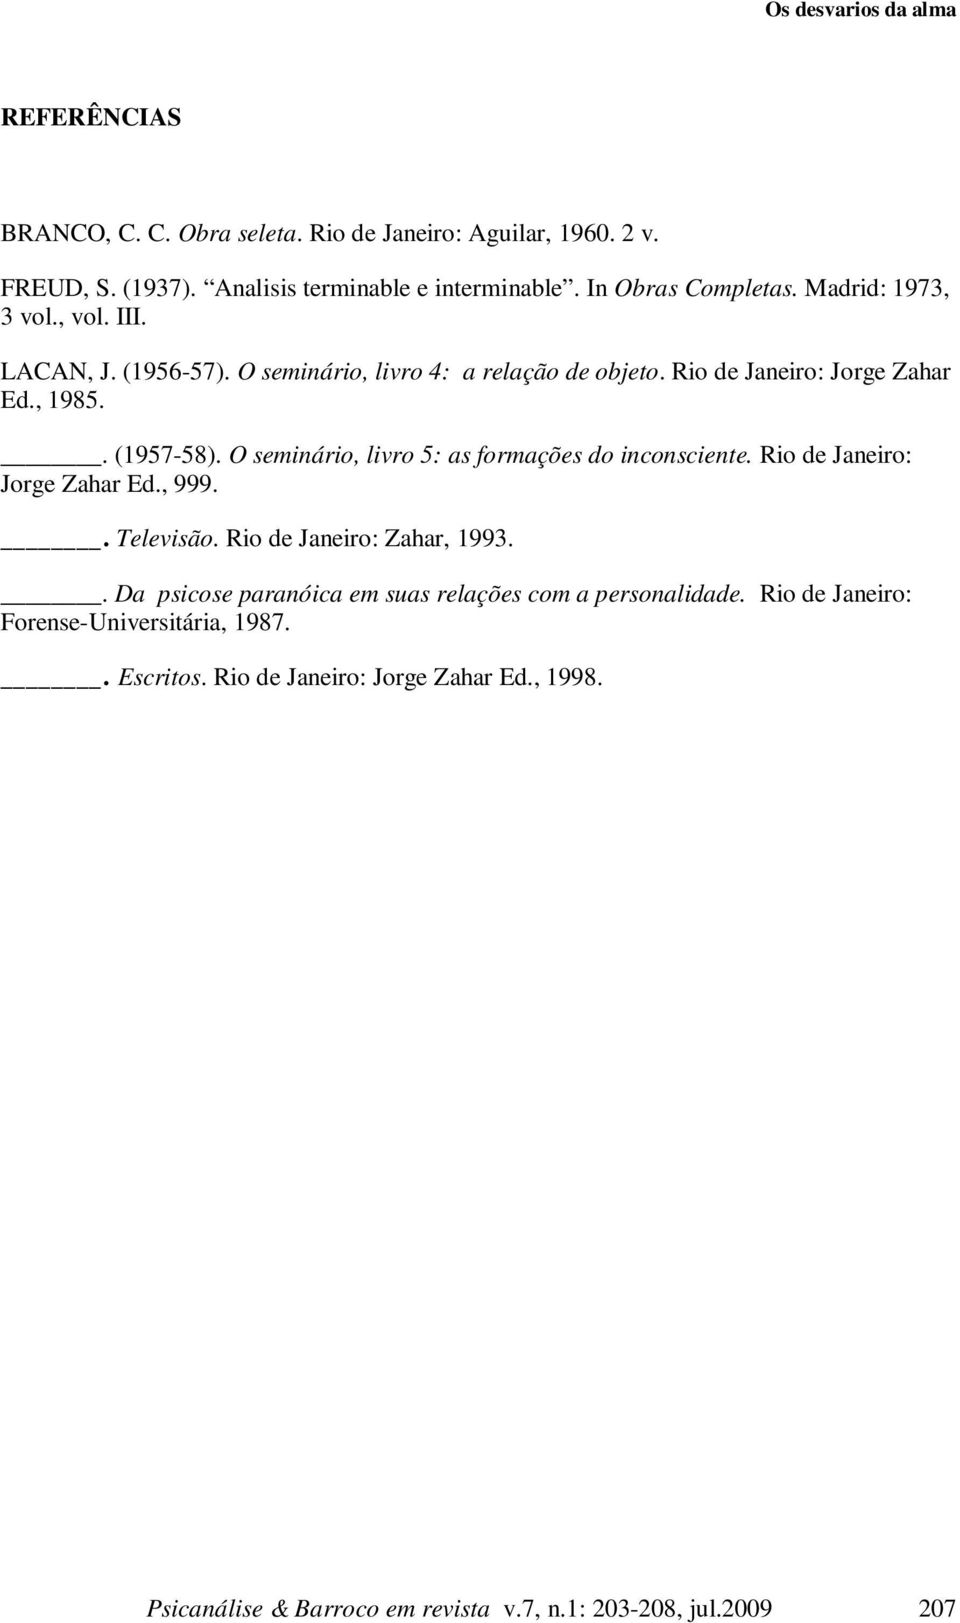 O seminário, livro 5: as formações do inconsciente. Rio de Janeiro: Jorge Zahar Ed., 999.. Televisão. Rio de Janeiro: Zahar, 1993.